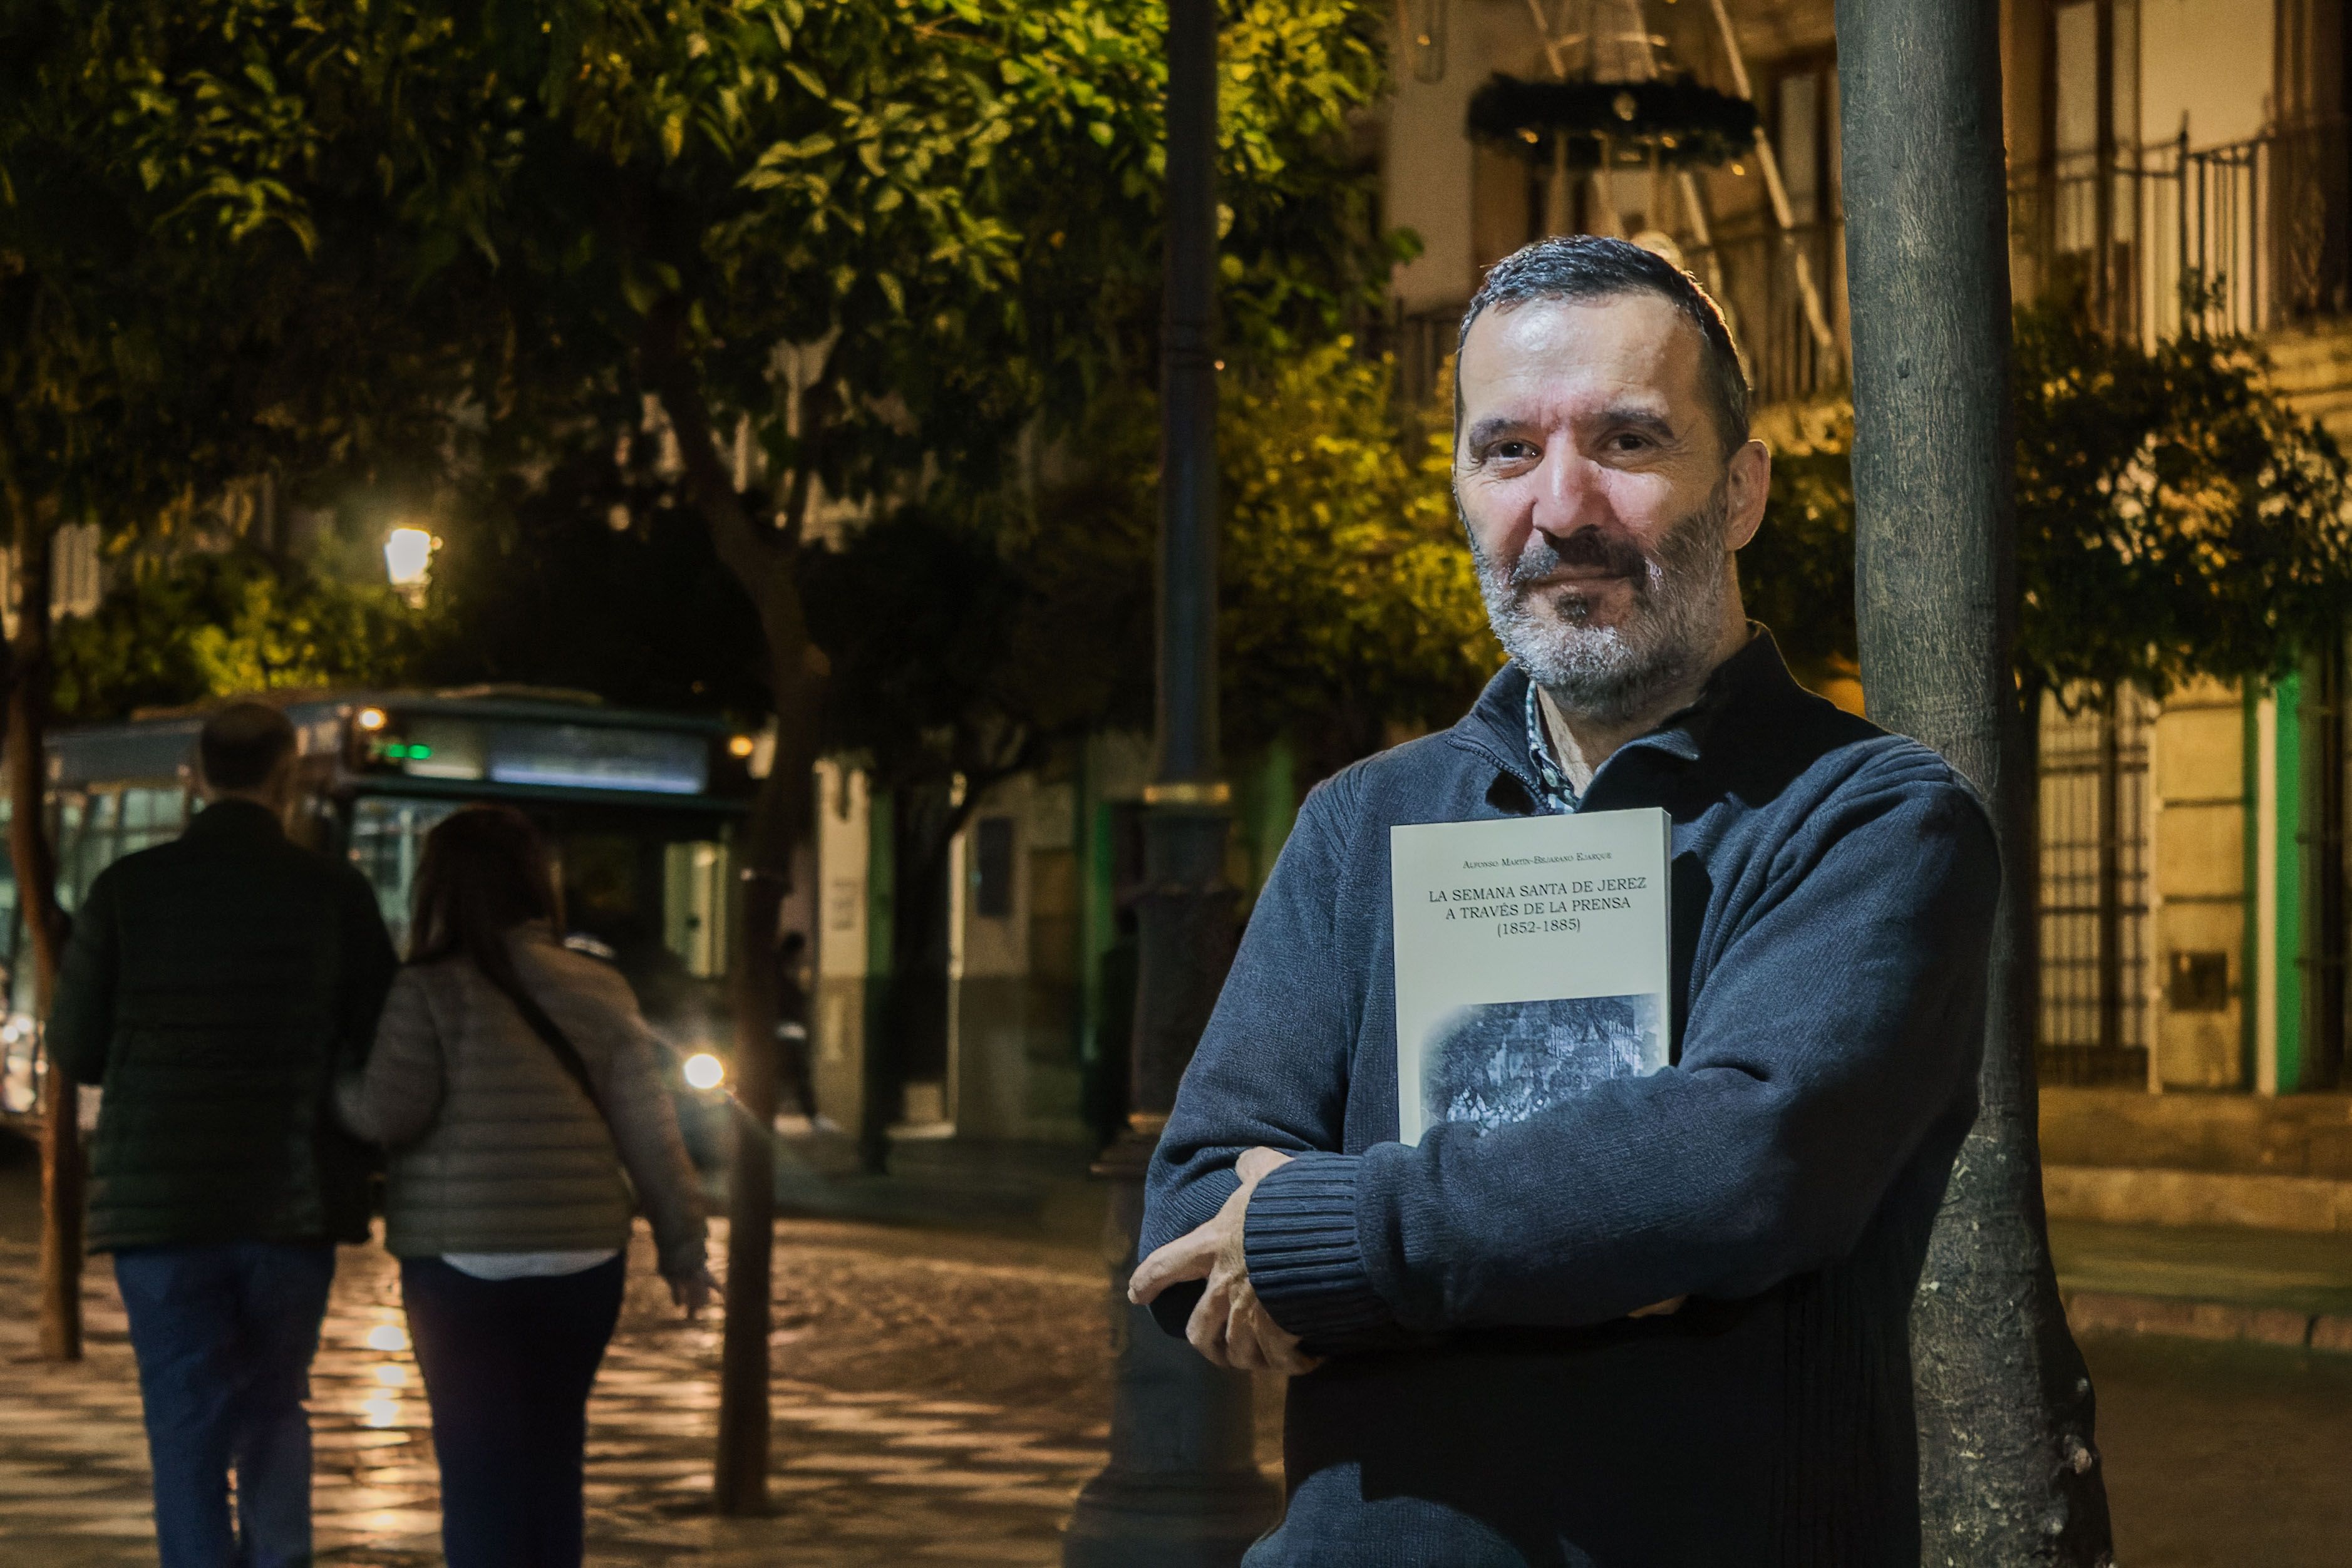 Alfonso Martín-Bejarano posando con el libro que ha publicado.